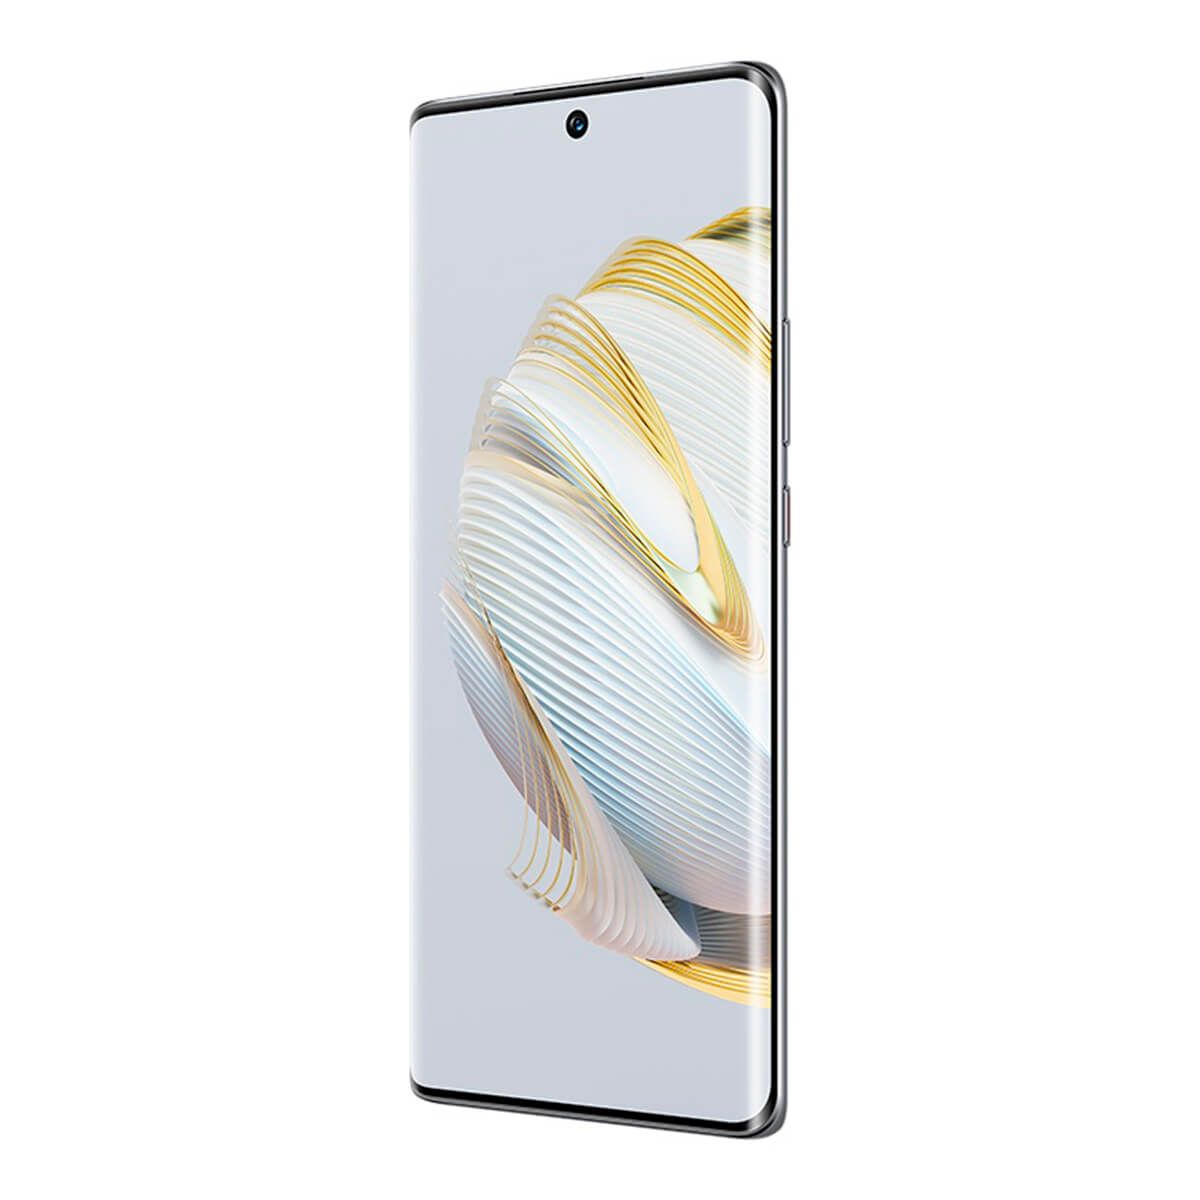 Huawei Nova 10 4G 8Go/128Go Argent (Argent Étoilé) Double SIM